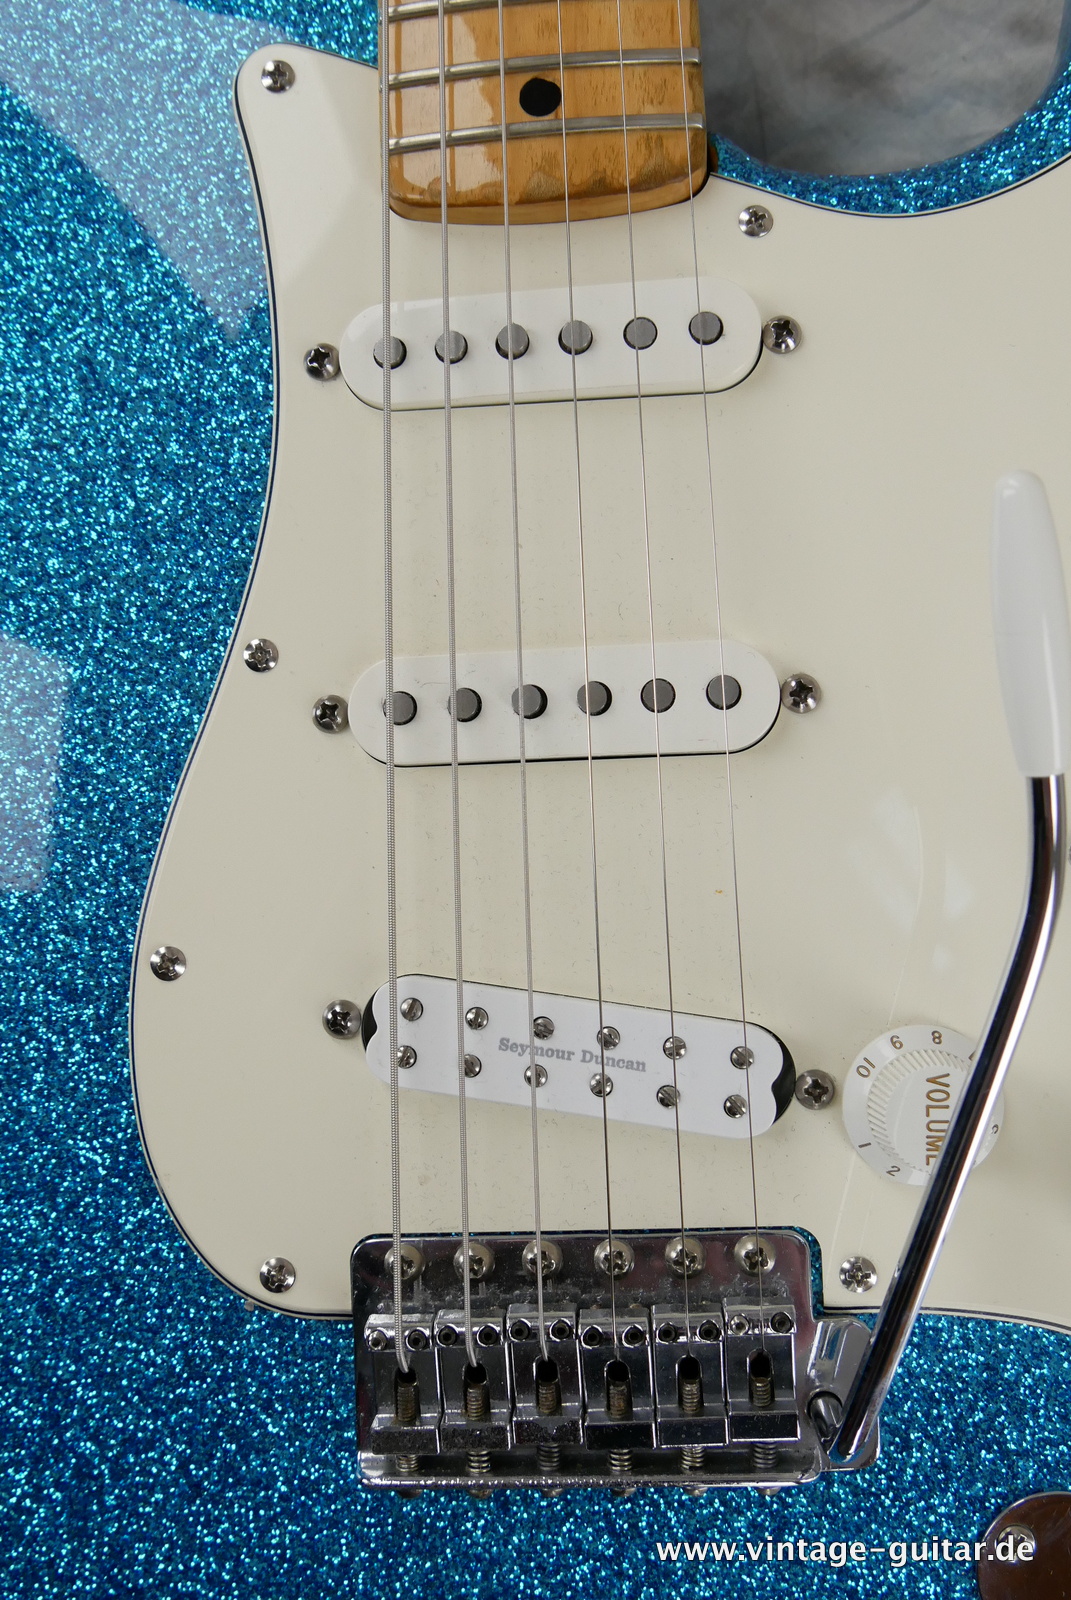 Fender-Stratocaster-1974c-blue-sparkle-014.JPG